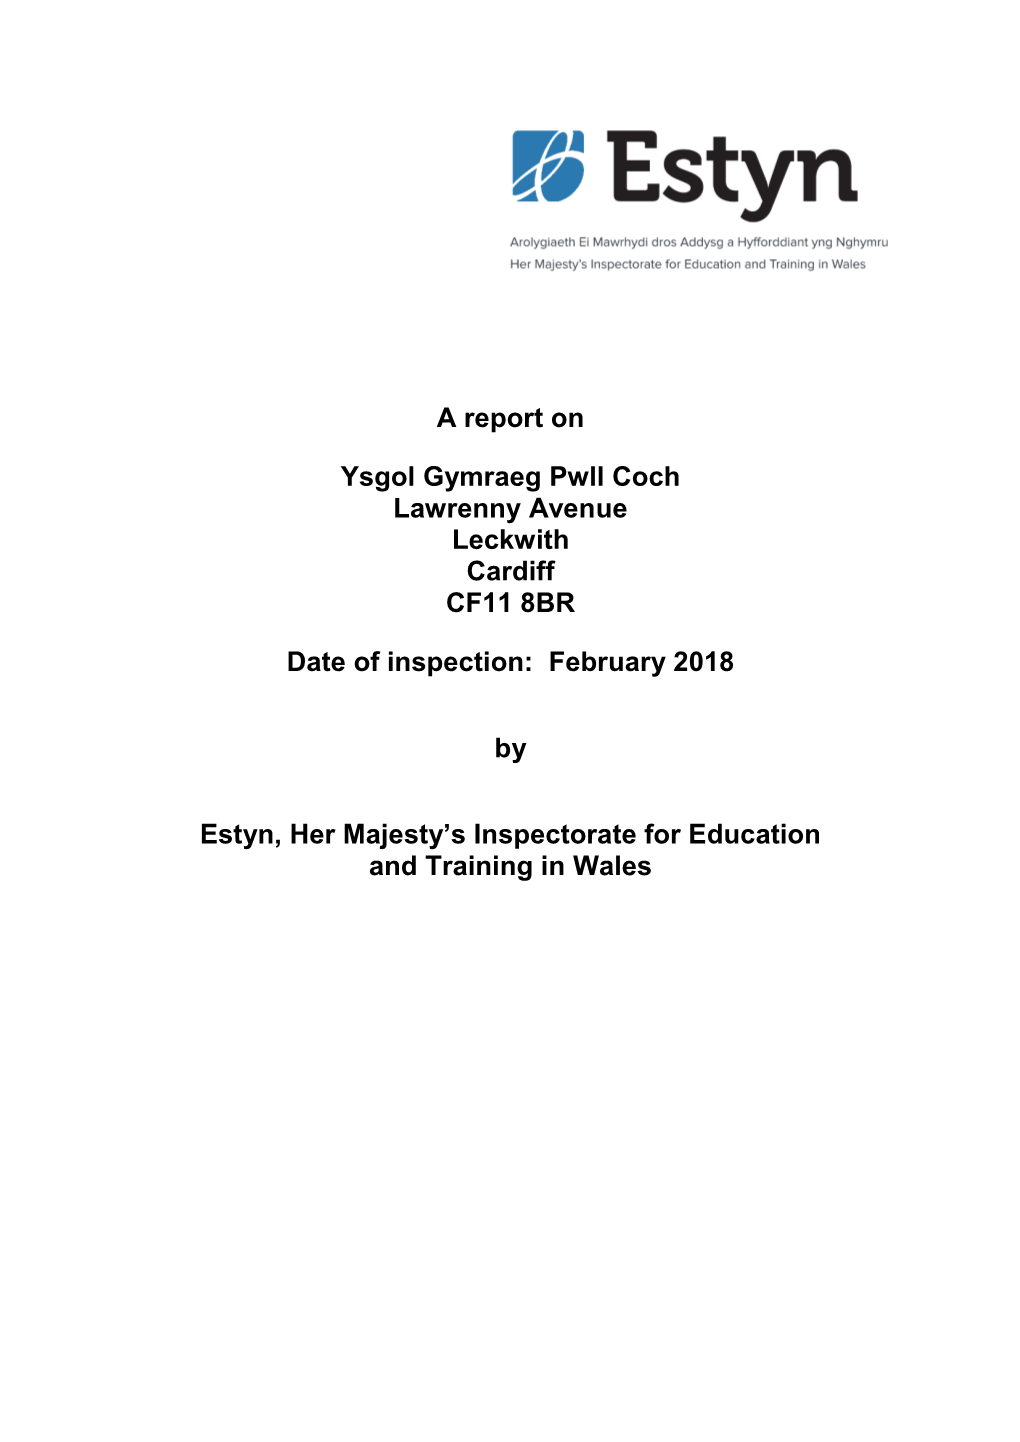 Inspection Report Ysgol Gymraeg Pwll Coch